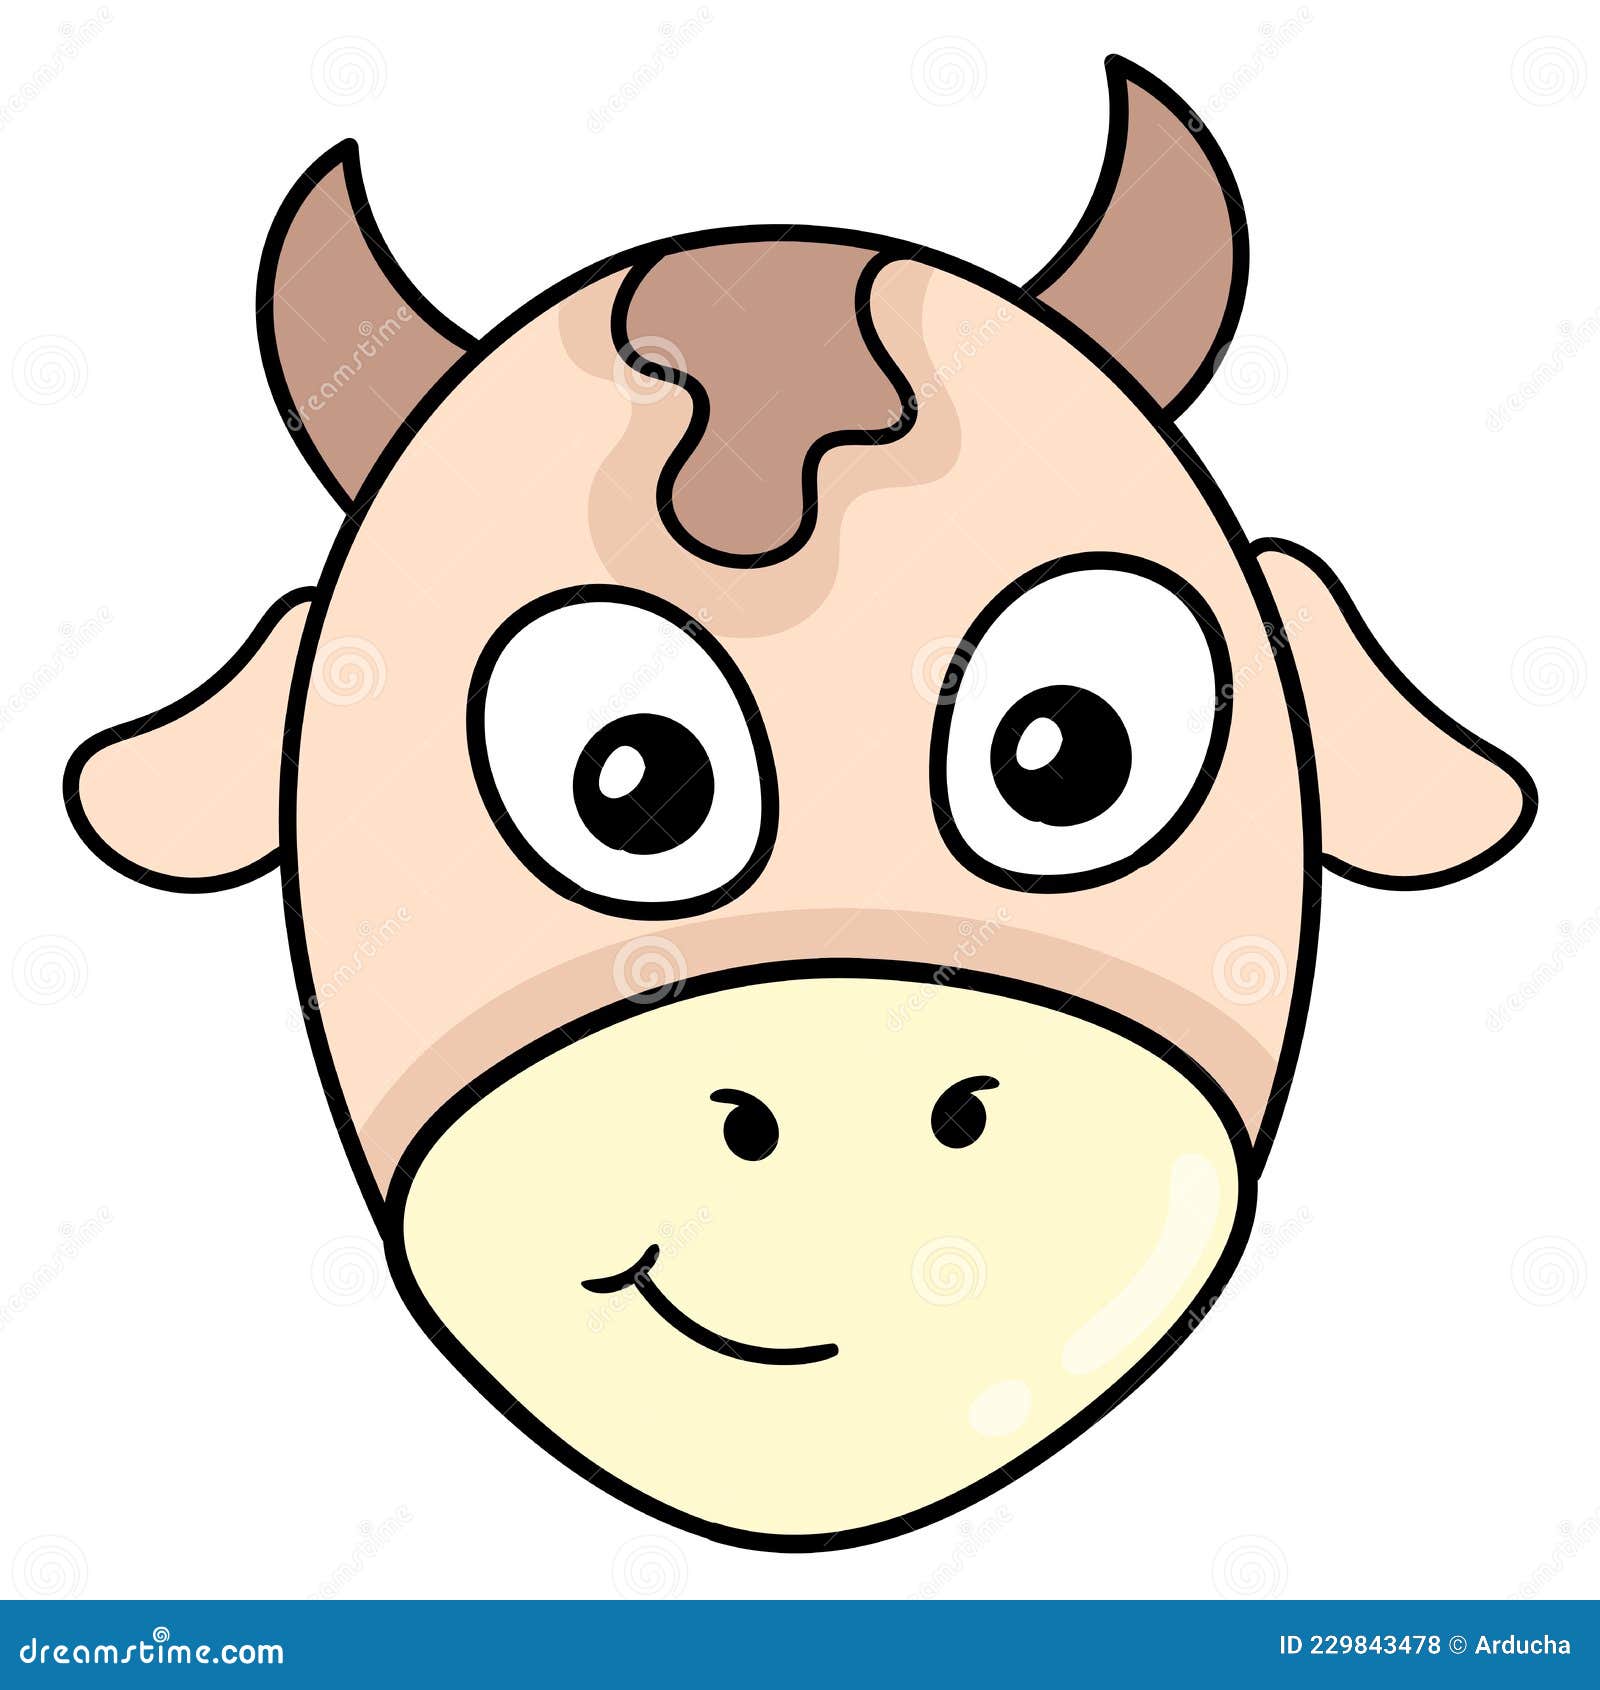 Cute cow  Cute cartoon drawings, Cute doodles, Cute cartoon animals